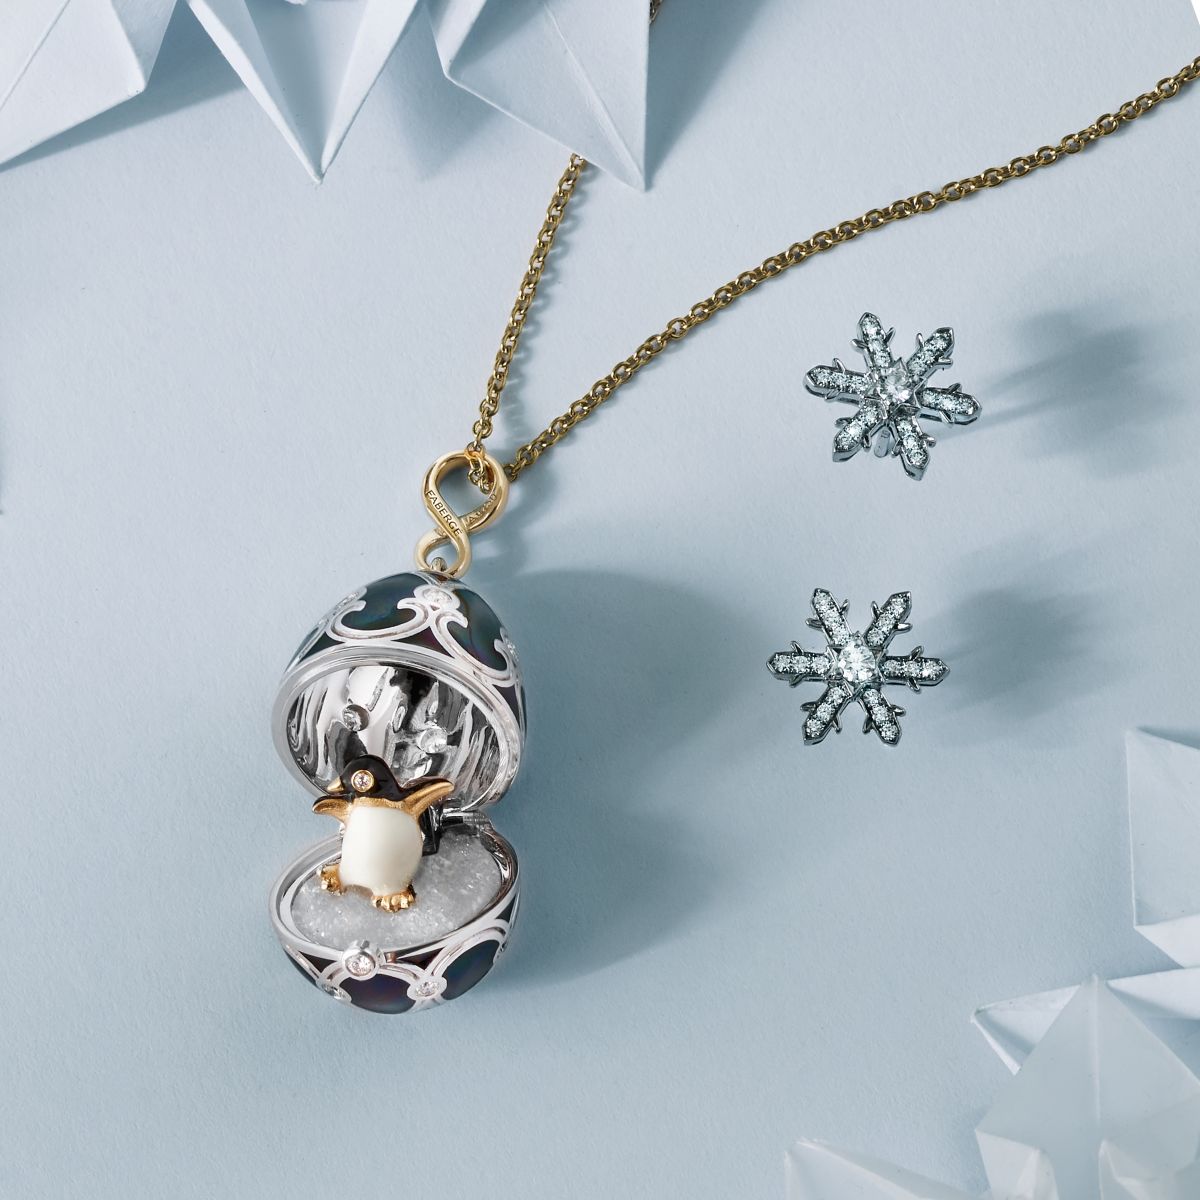 Fabergé surprinde cu un nou pandantiv festiv cu tematica de iarna